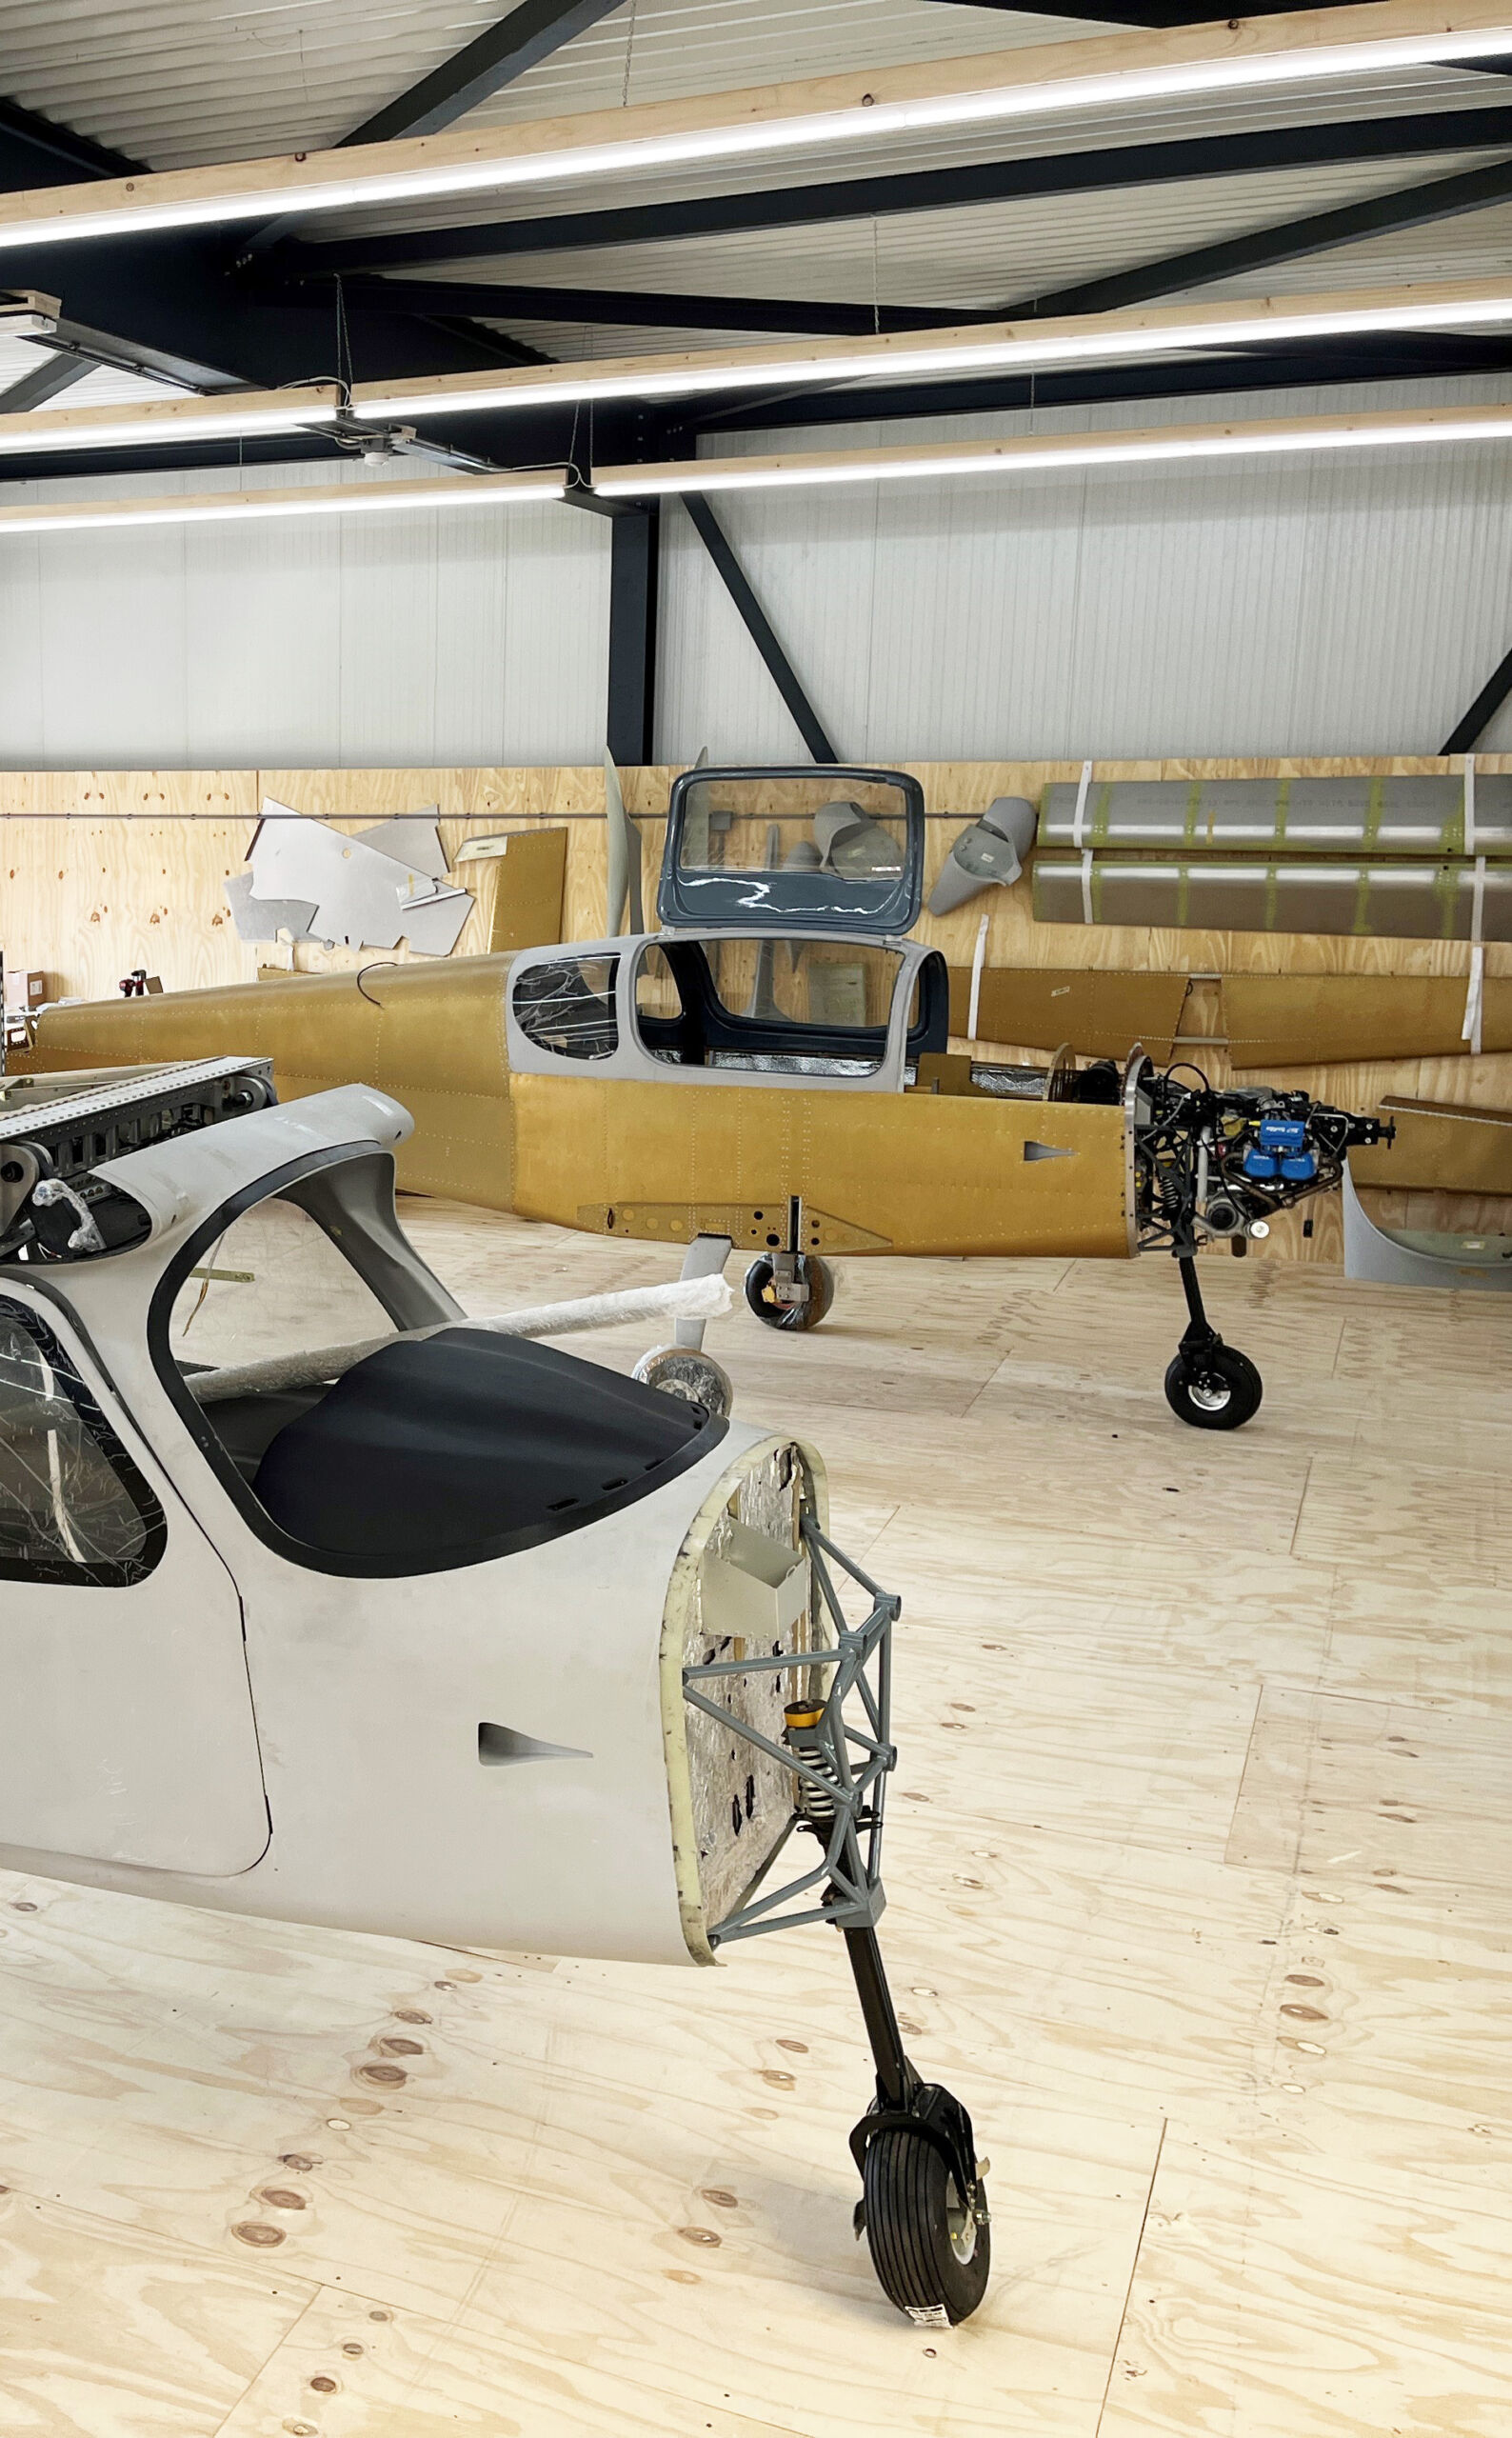 Aircraft Builder assist program Sling aircraft